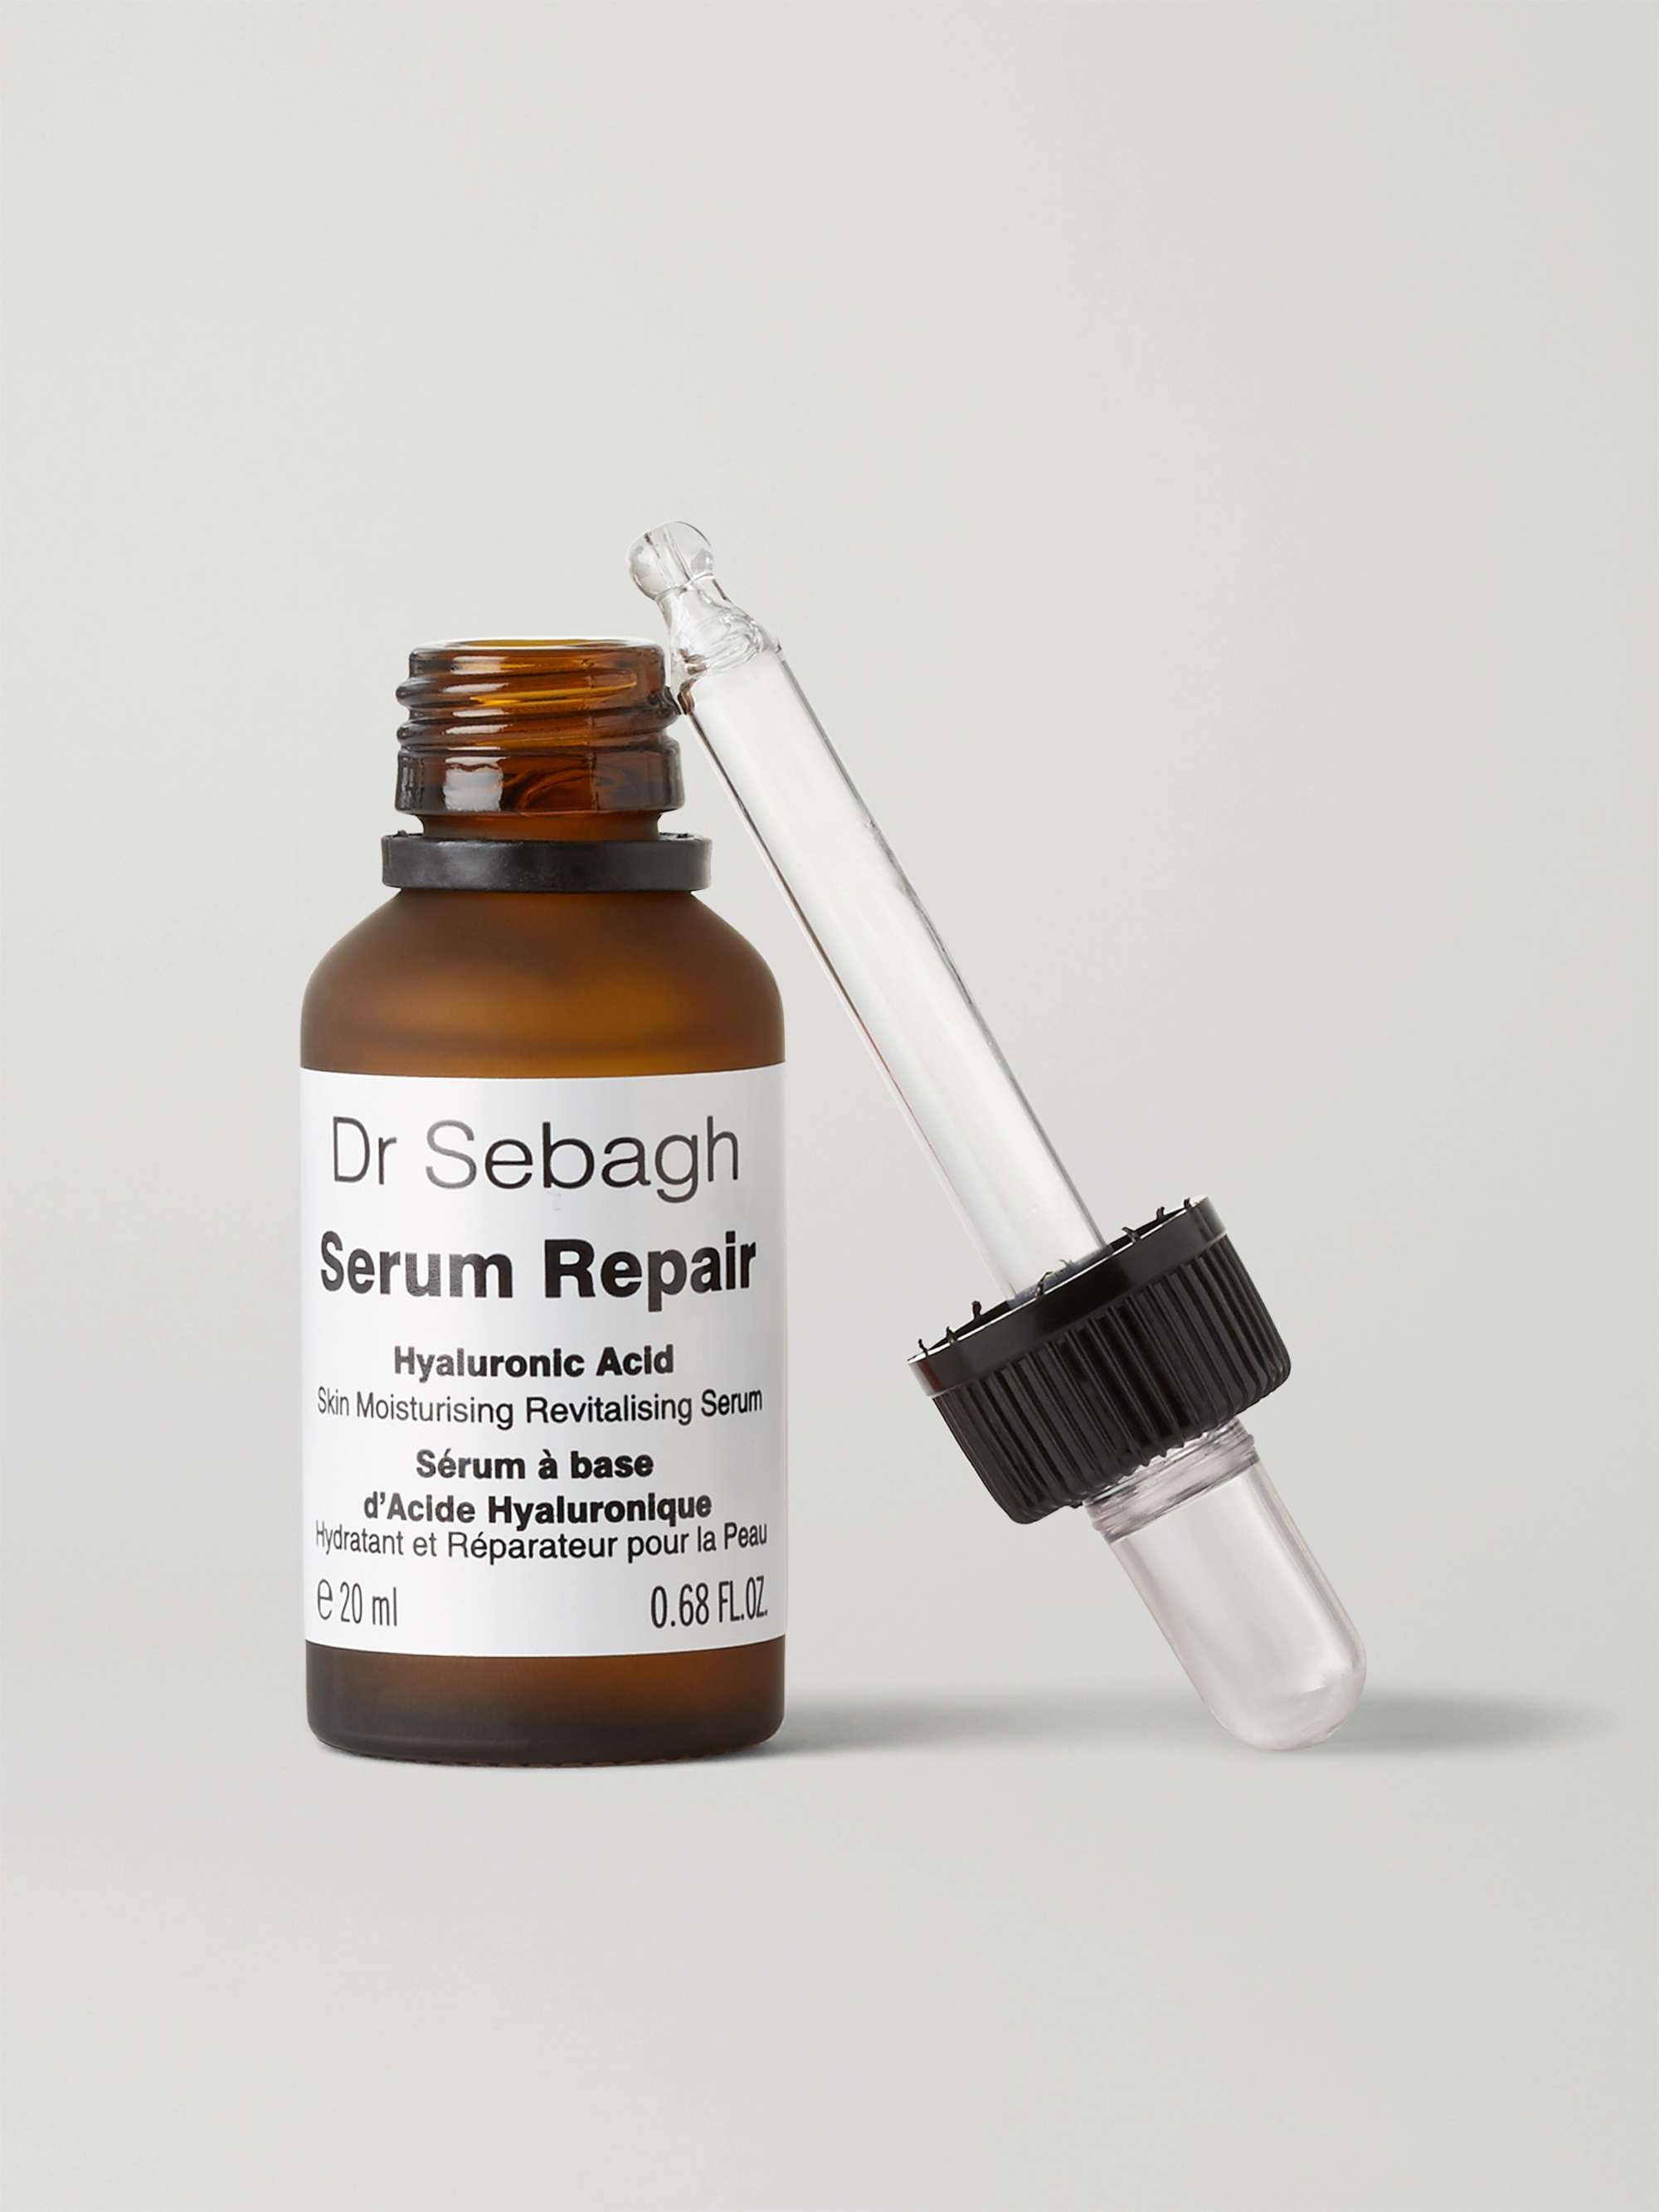 DR SEBAGH Serum Repair, 20ml